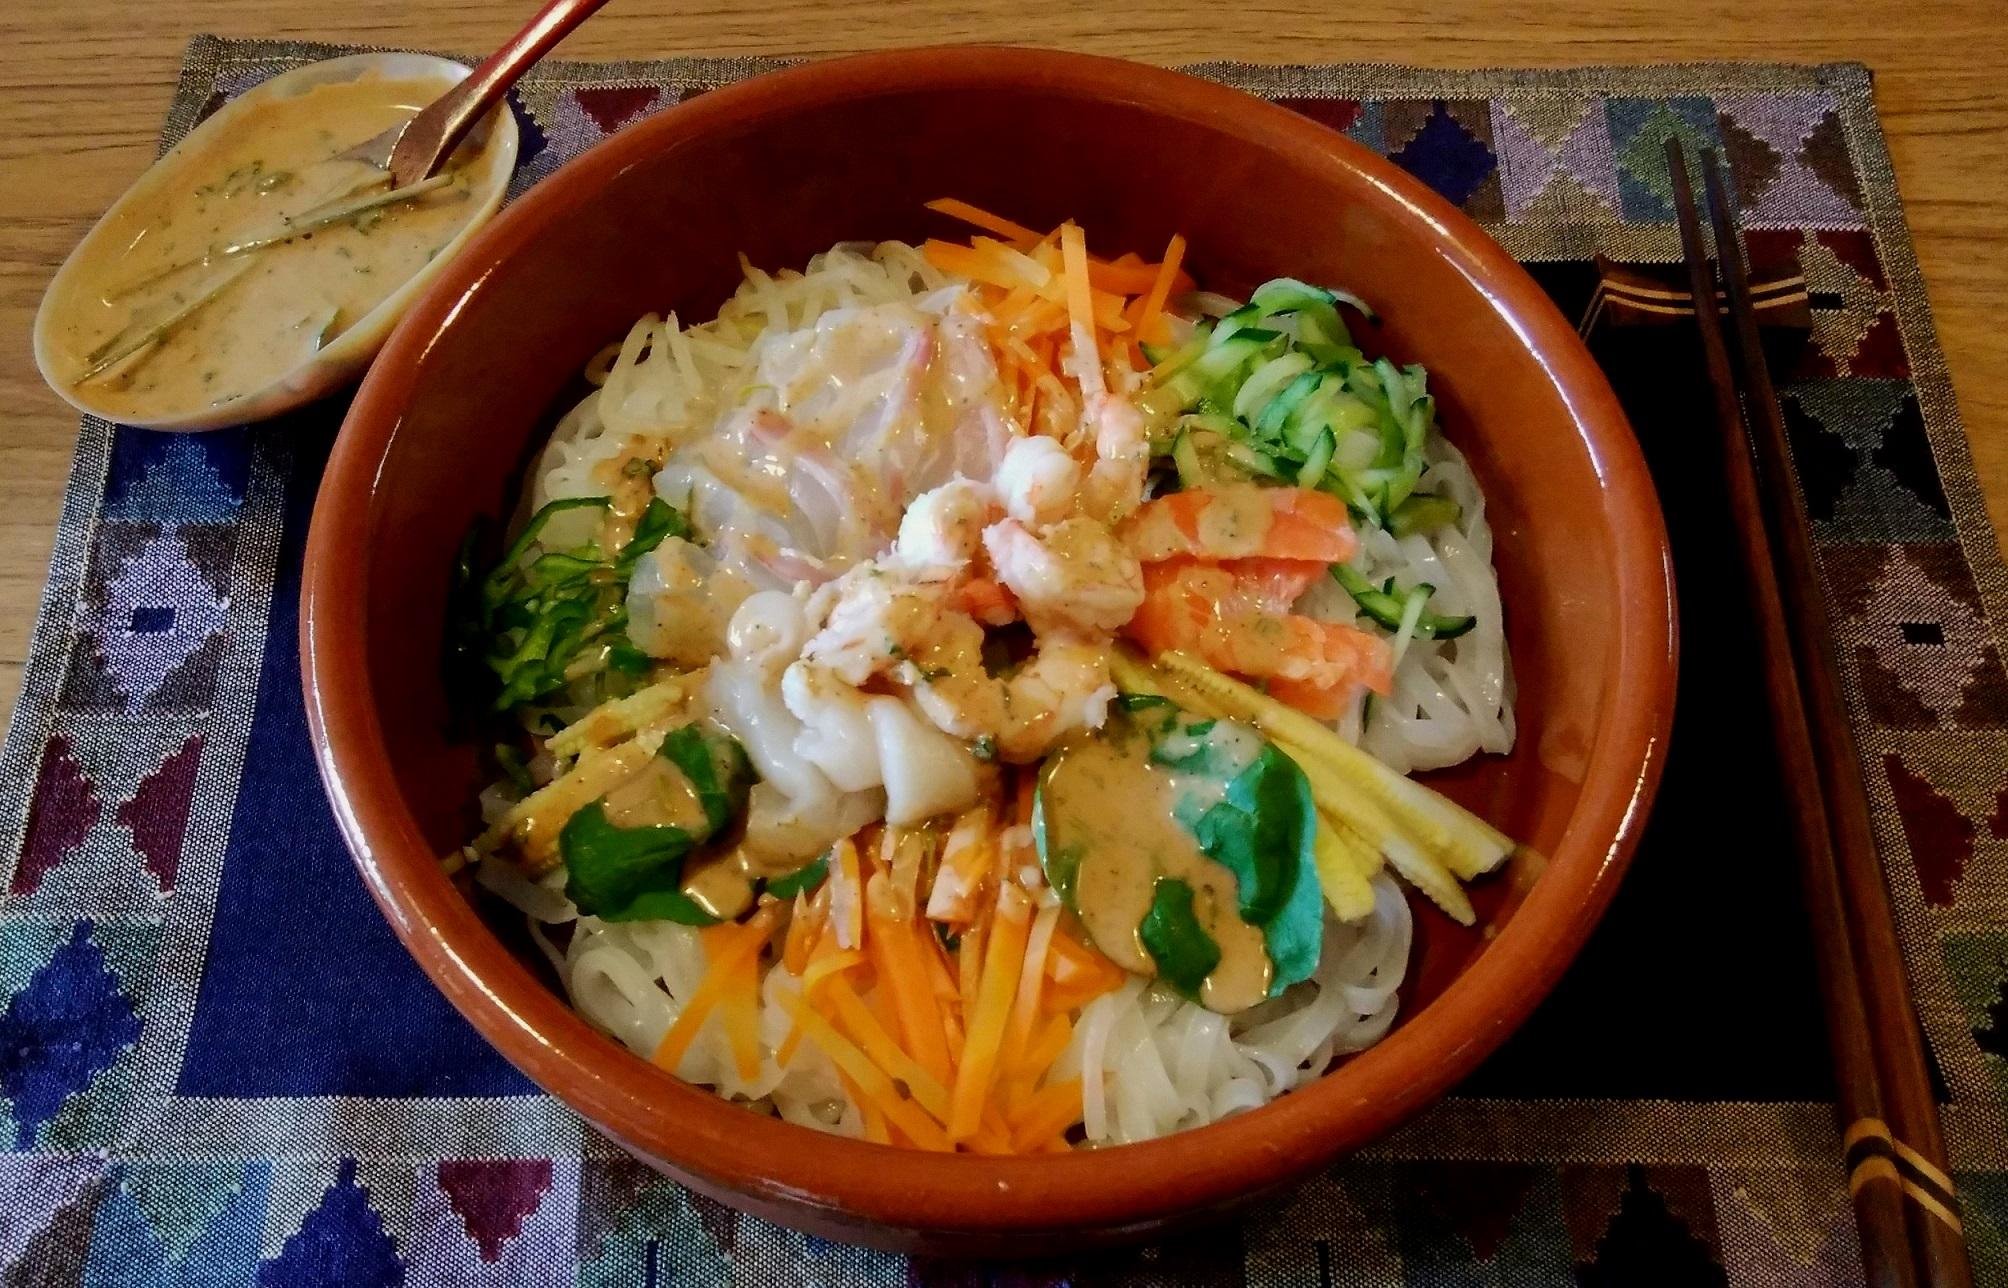 野菜と海鮮の冷たいフォーのレシピ 作り方 小林 素子 料理教室検索サイト クスパ